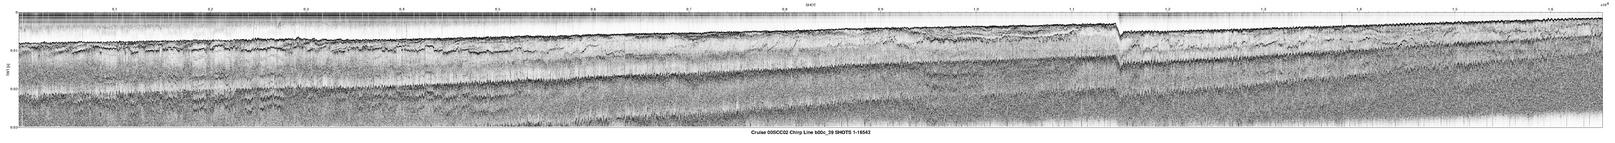 00SCC02 b00c_39 seismic profile image